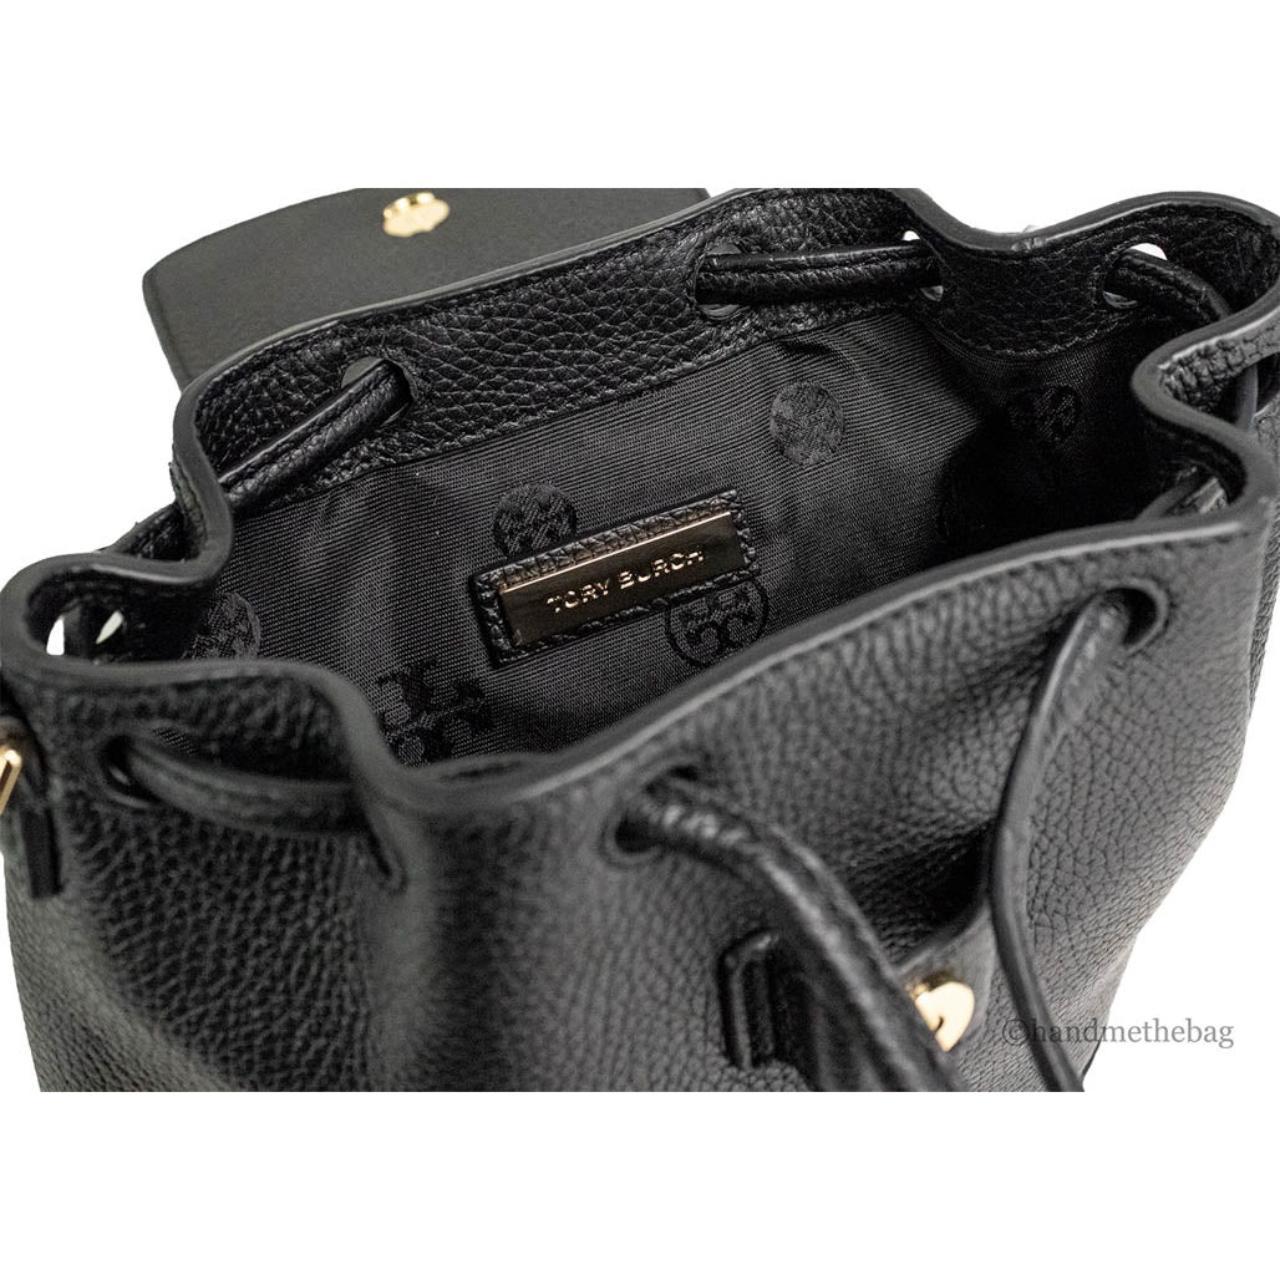 Tory Burch Thea Mini Web Satchel Handbag - Features: - Depop